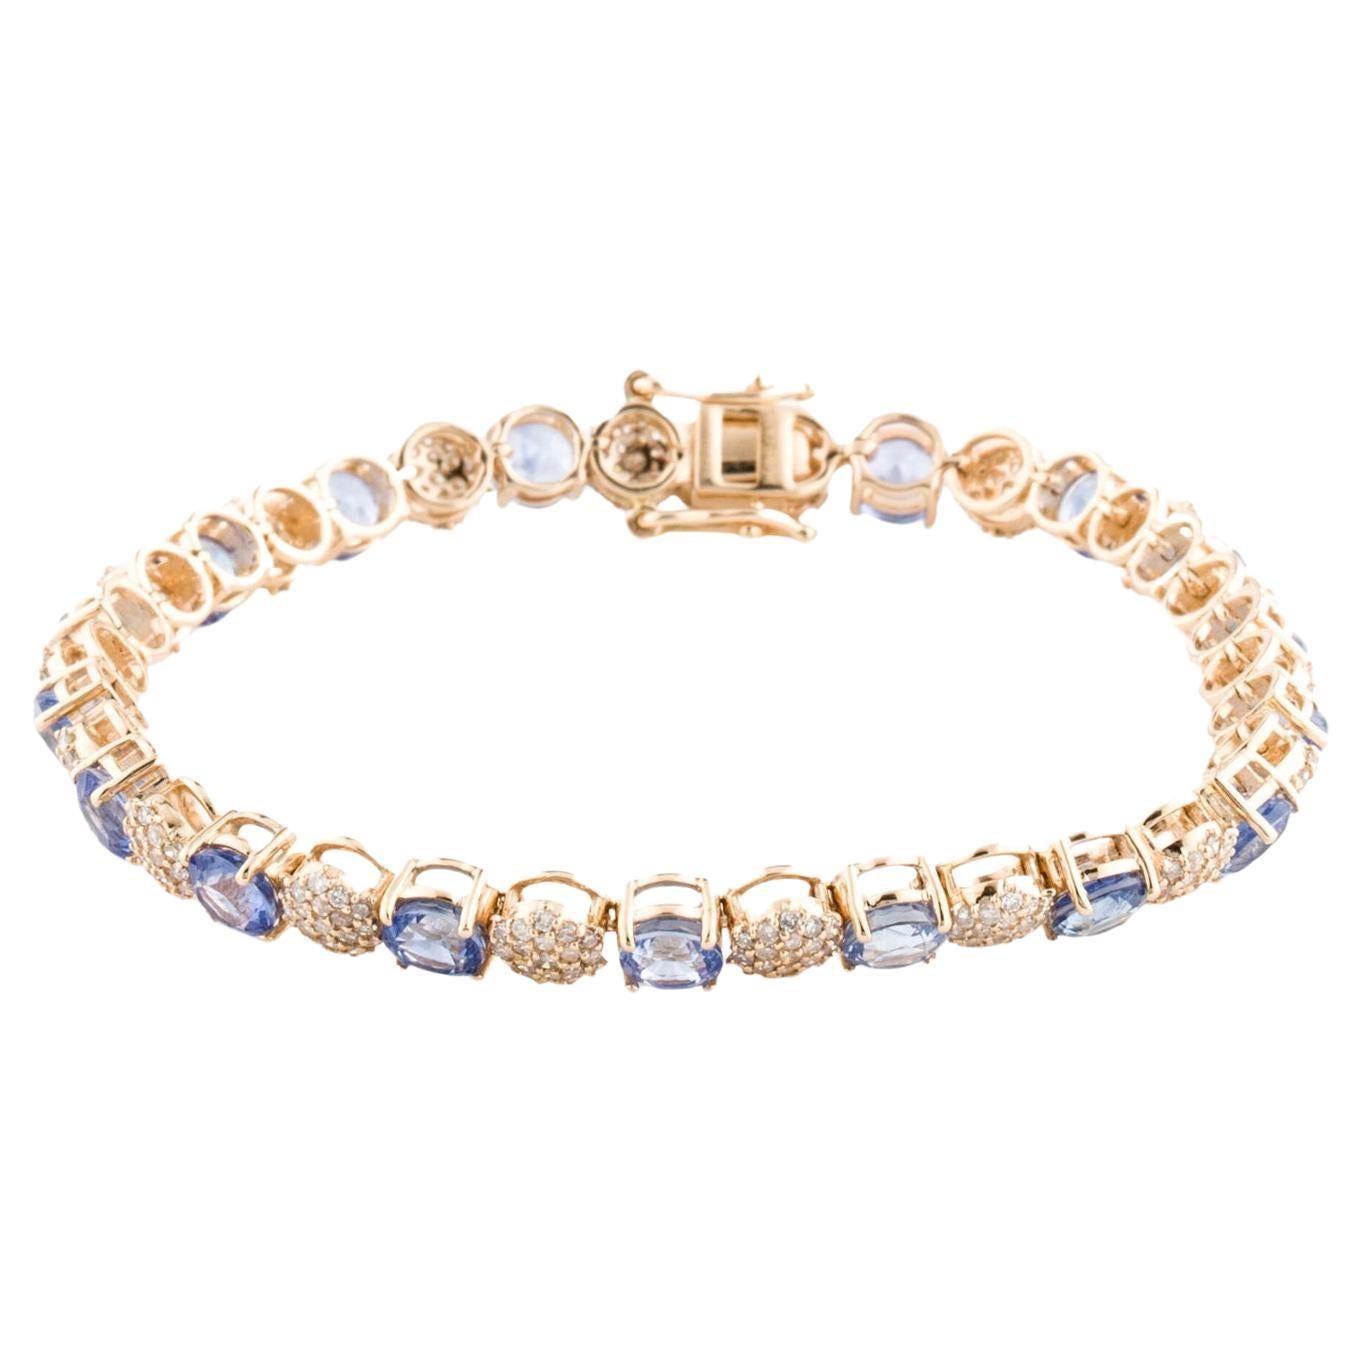 Bracelet tennis 14K saphir et diamant - Elegance et charme intemporel